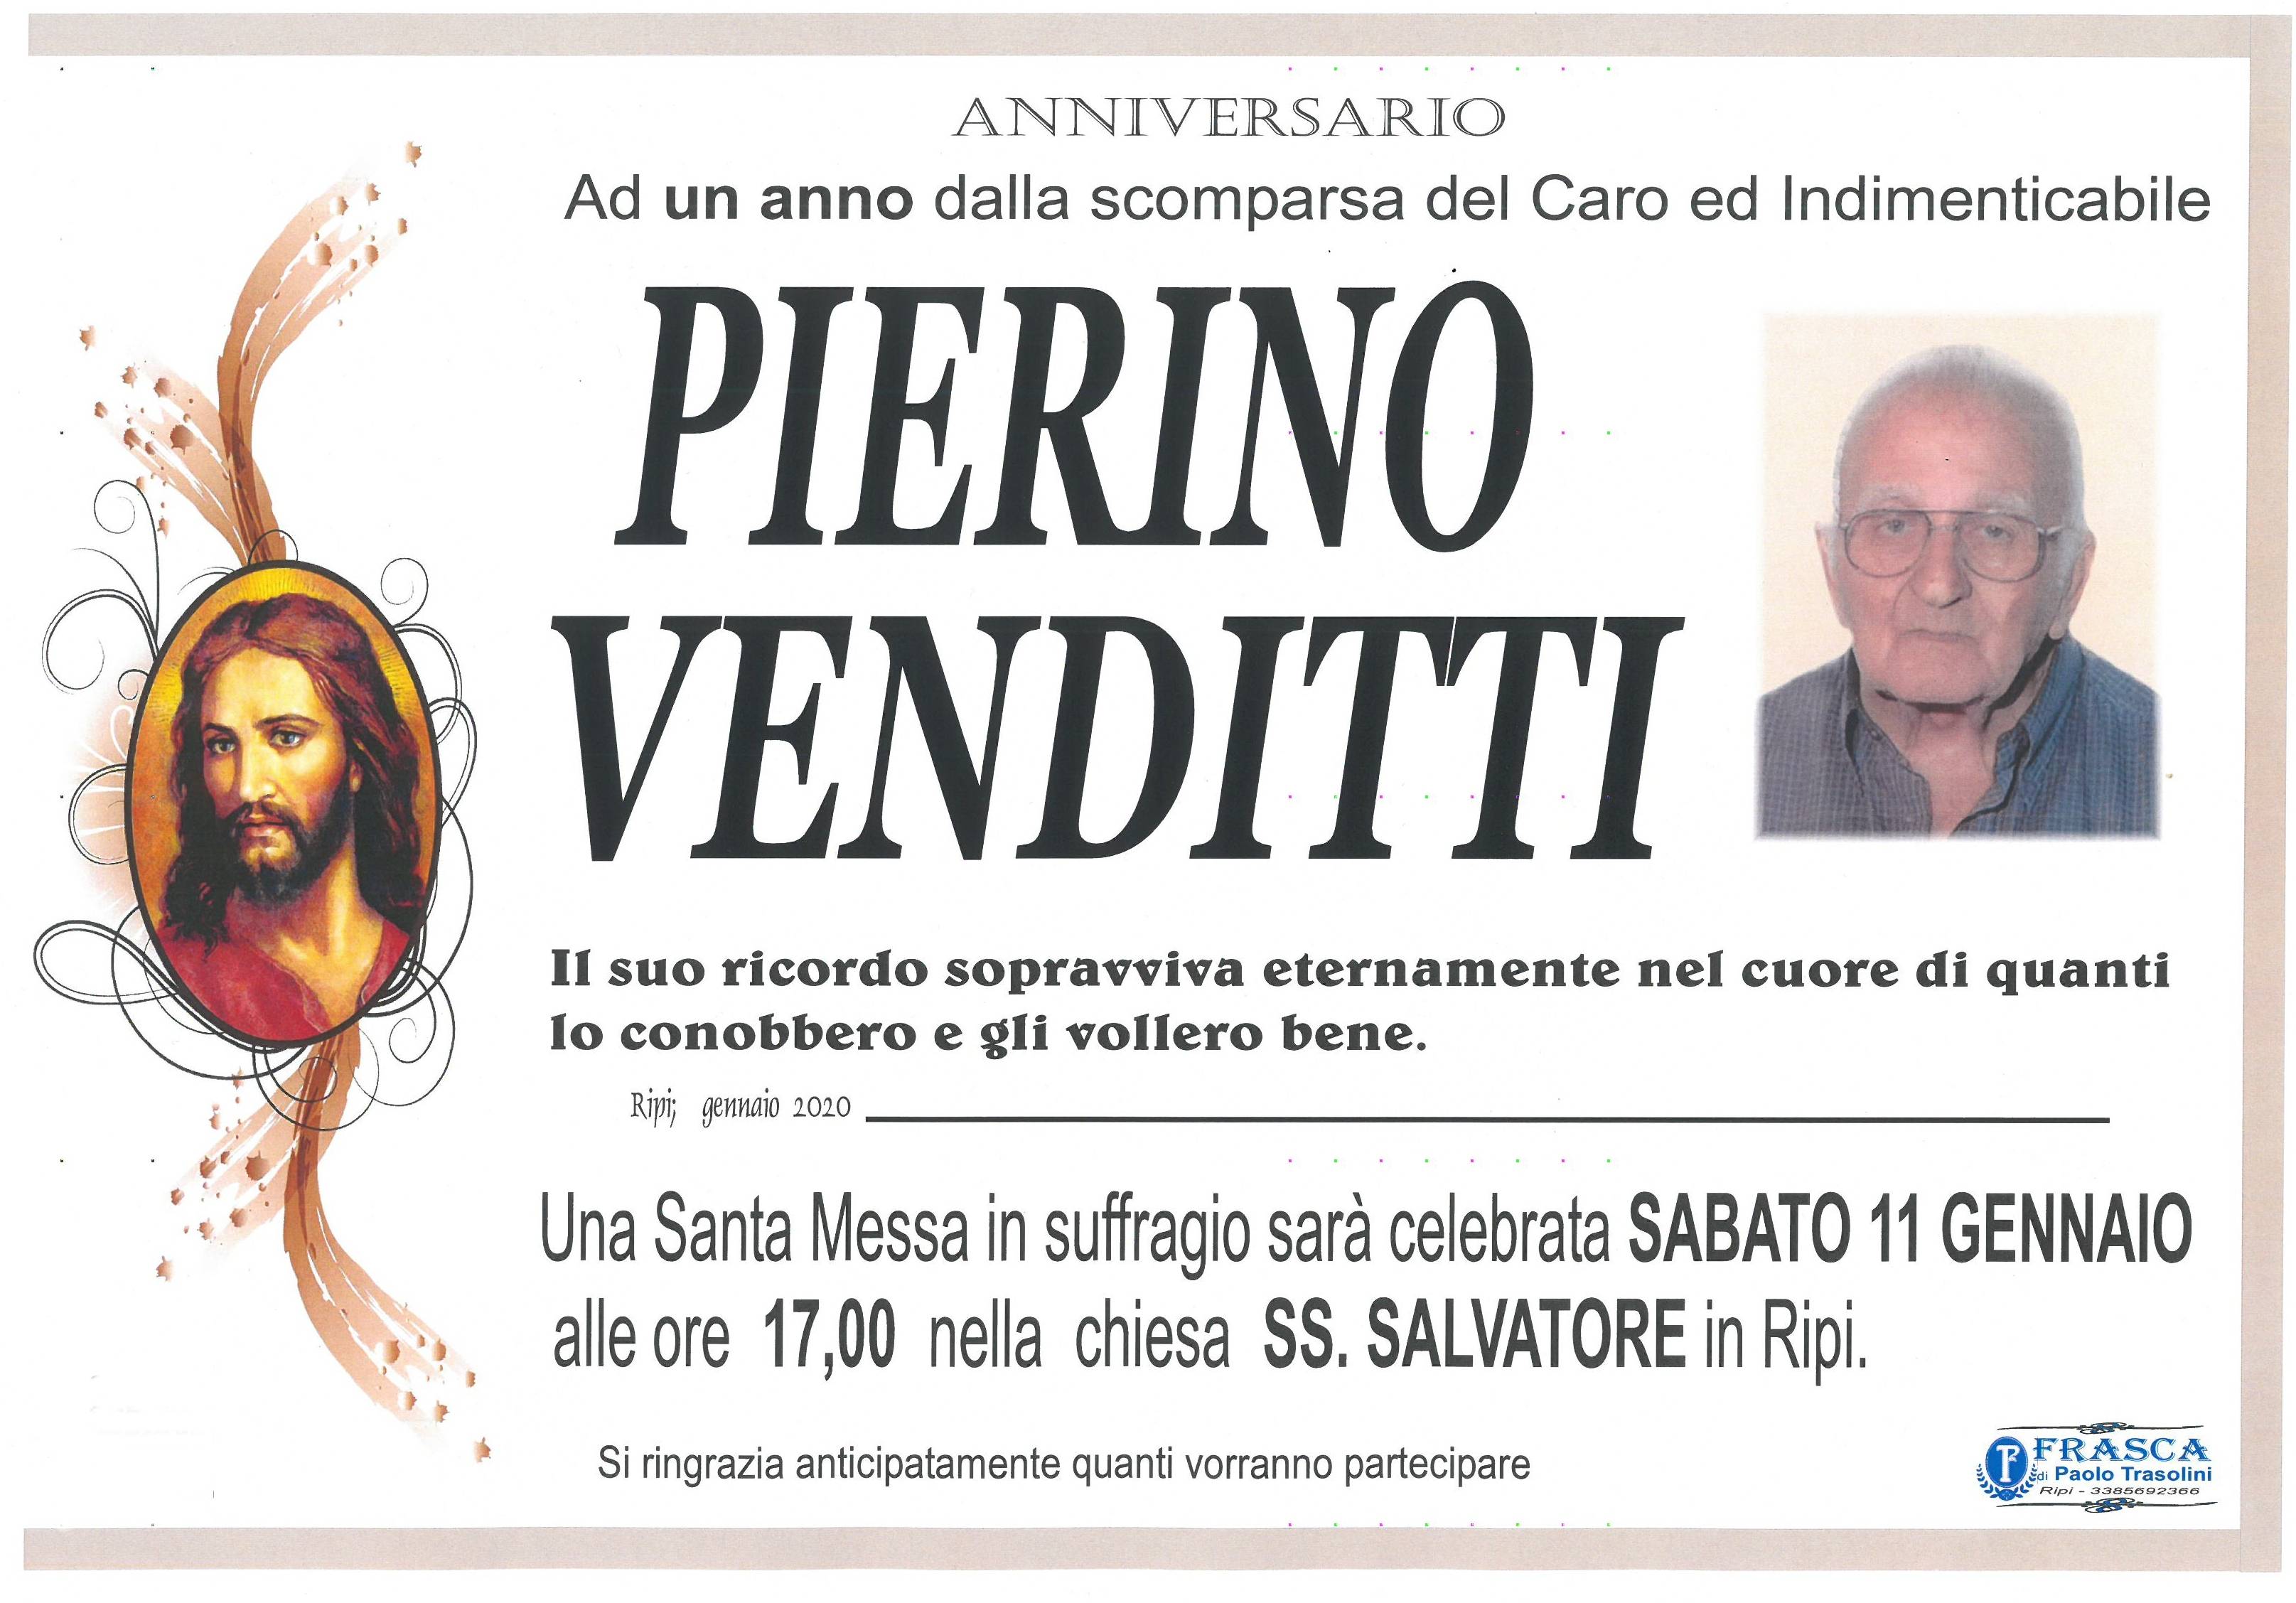 Pierino Venditti